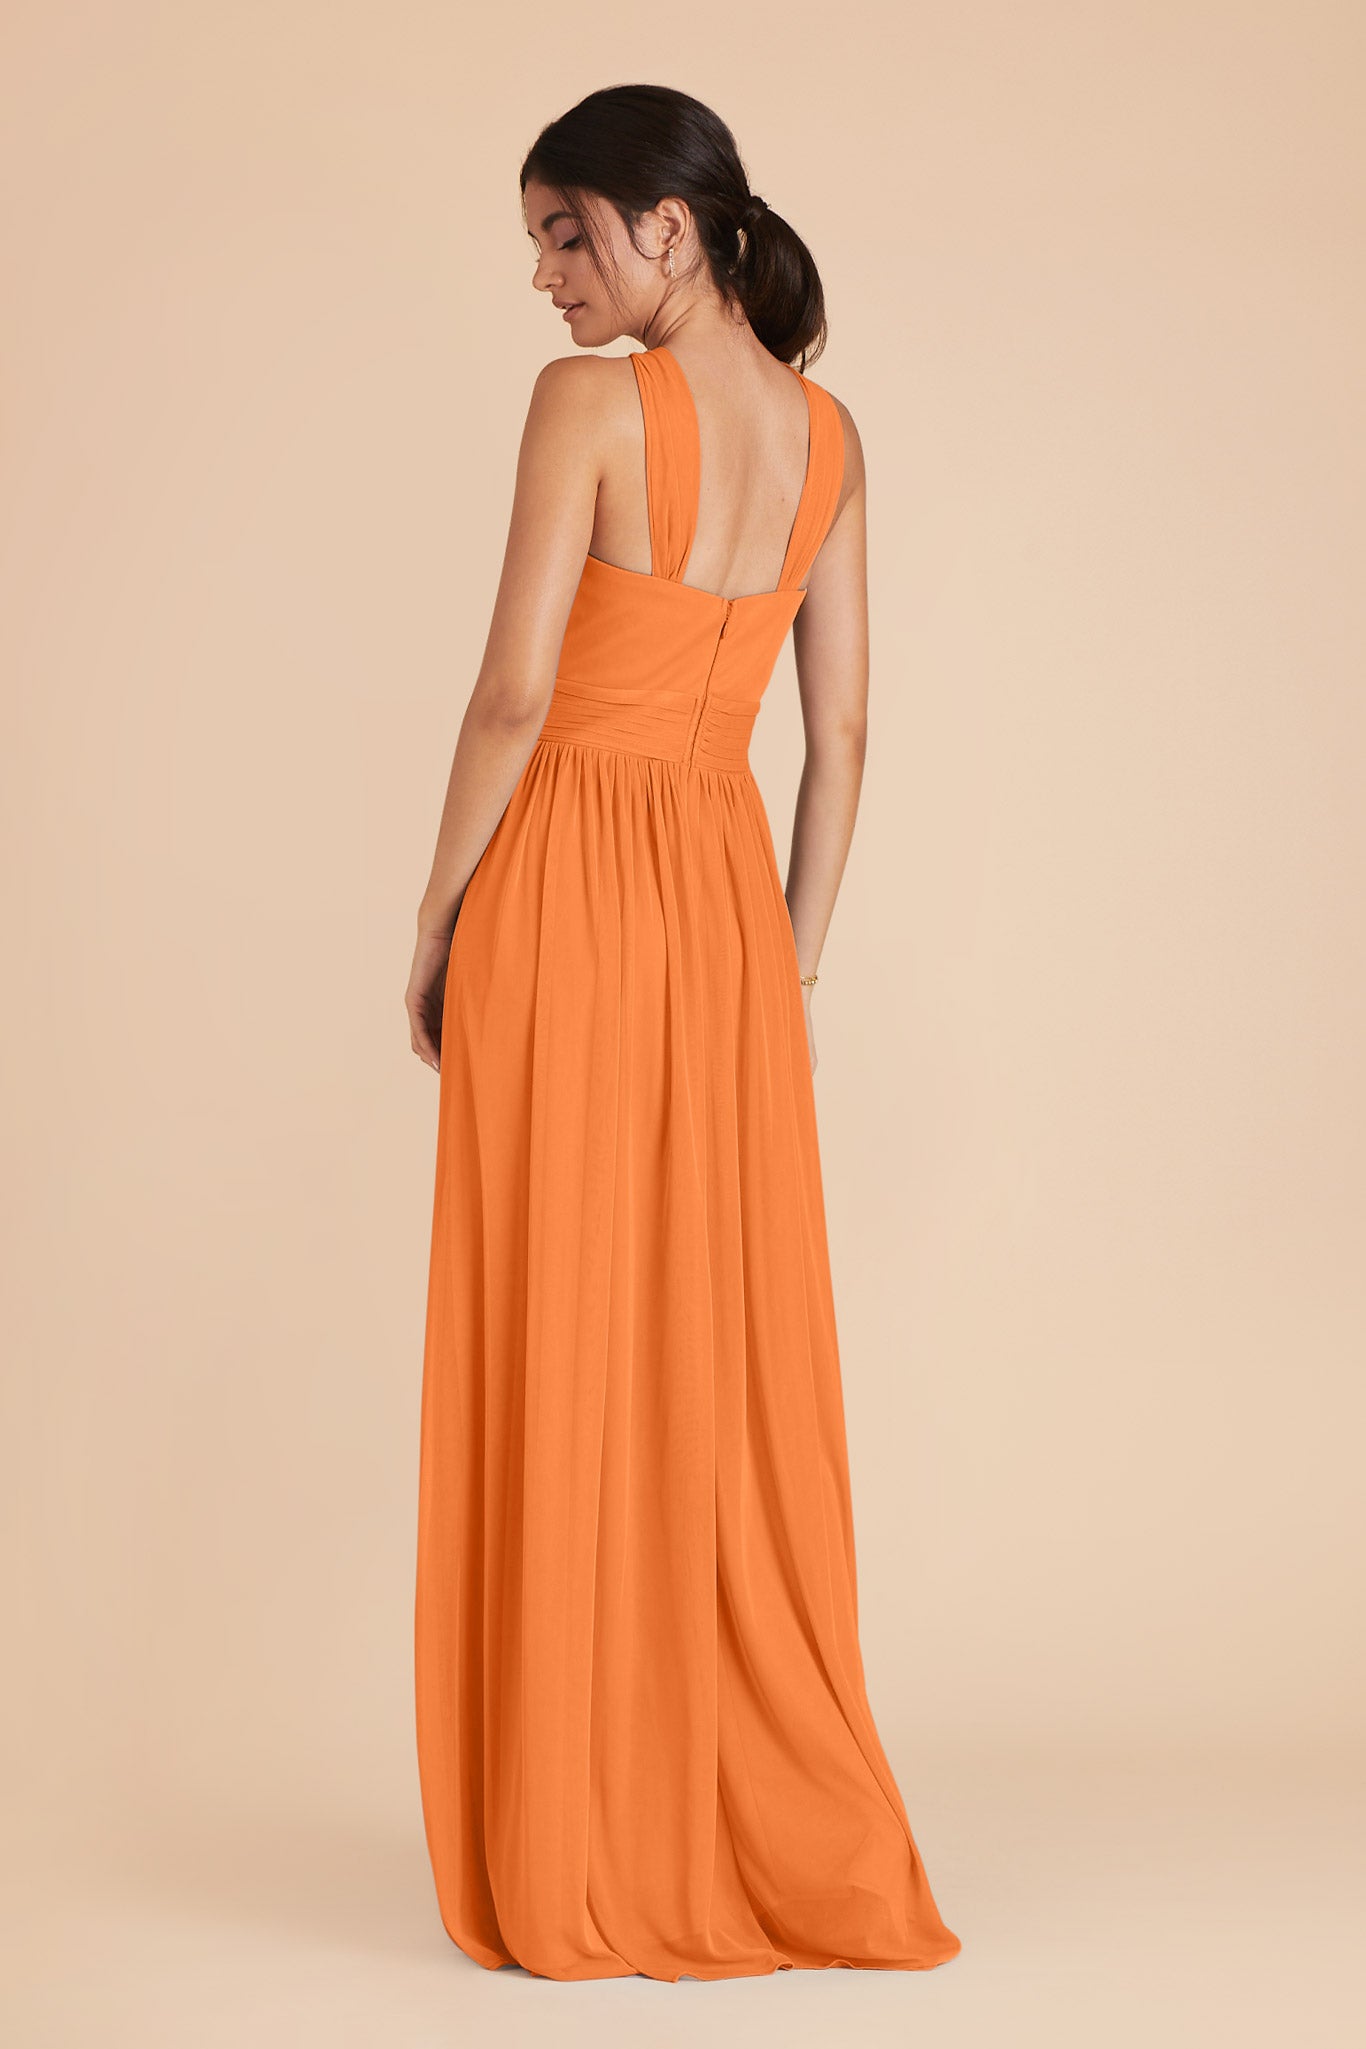 Apricot Kiko Chiffon Dress by Birdy Grey